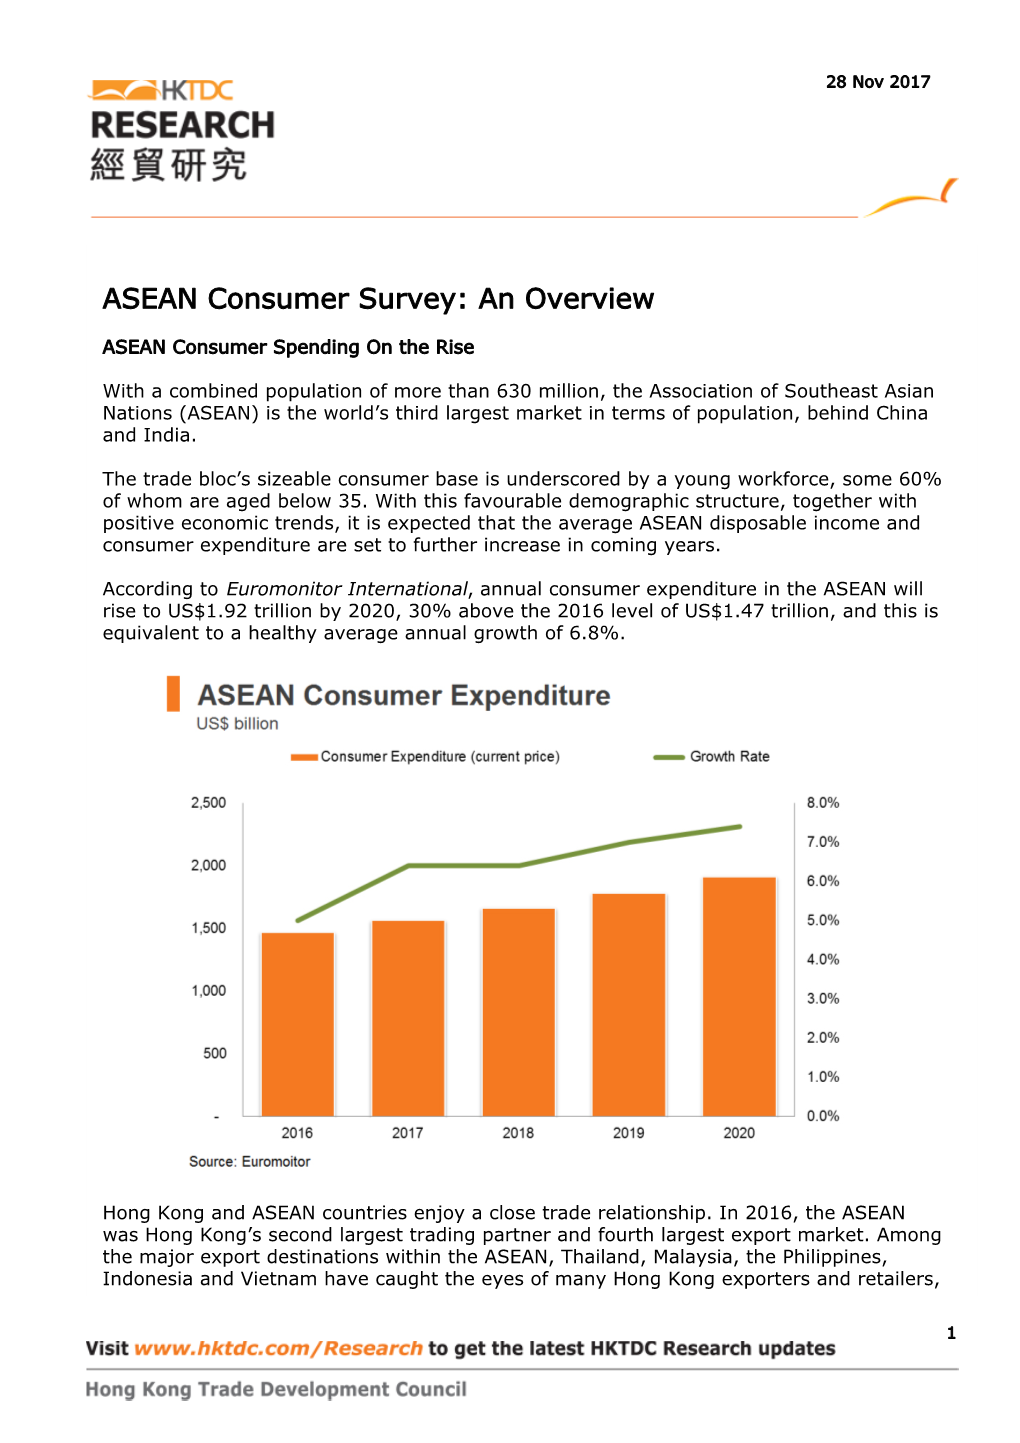 ASEAN Consumer Survey: an Overview